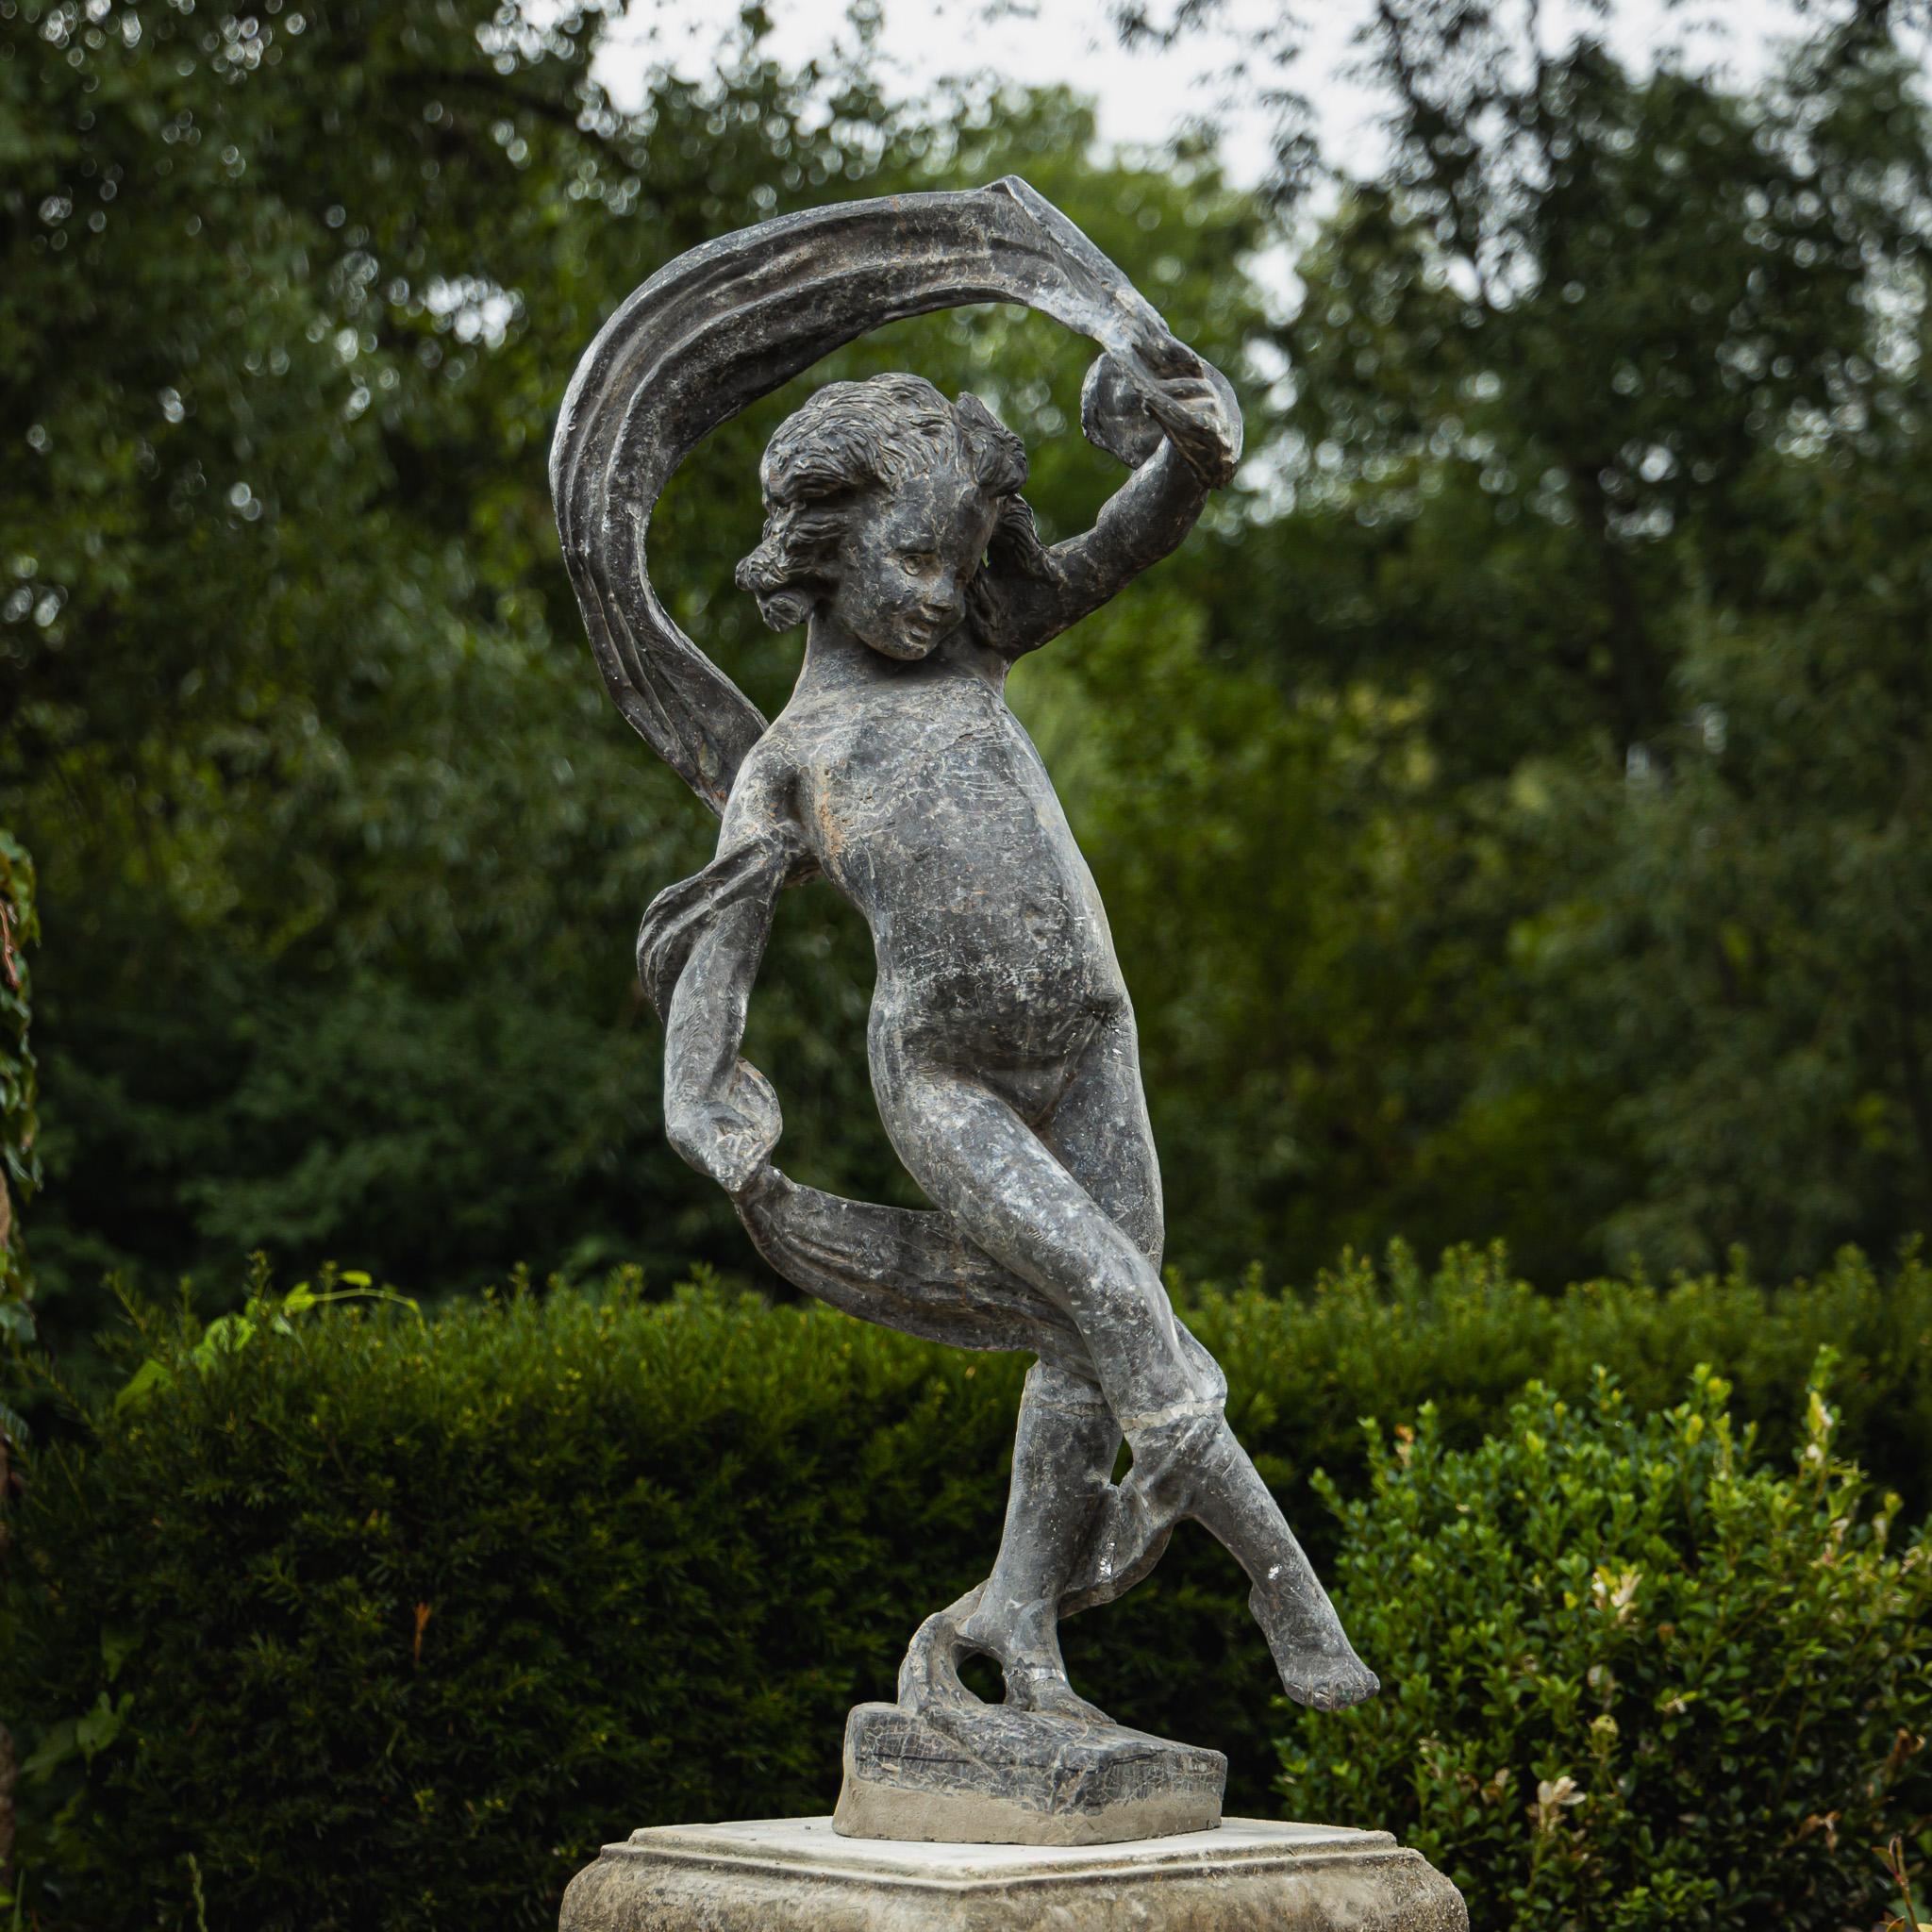 Gartenfigur eines tanzenden Mädchens aus Blei. Das Mädchen ist mit einem Schal abgebildet, der sich um ihren Körper windet und vom Wind aufgewirbelt wird. Die Bleiskulptur ist ein Klassiker und bekannt aus englischen Parks. Es ist teilweise